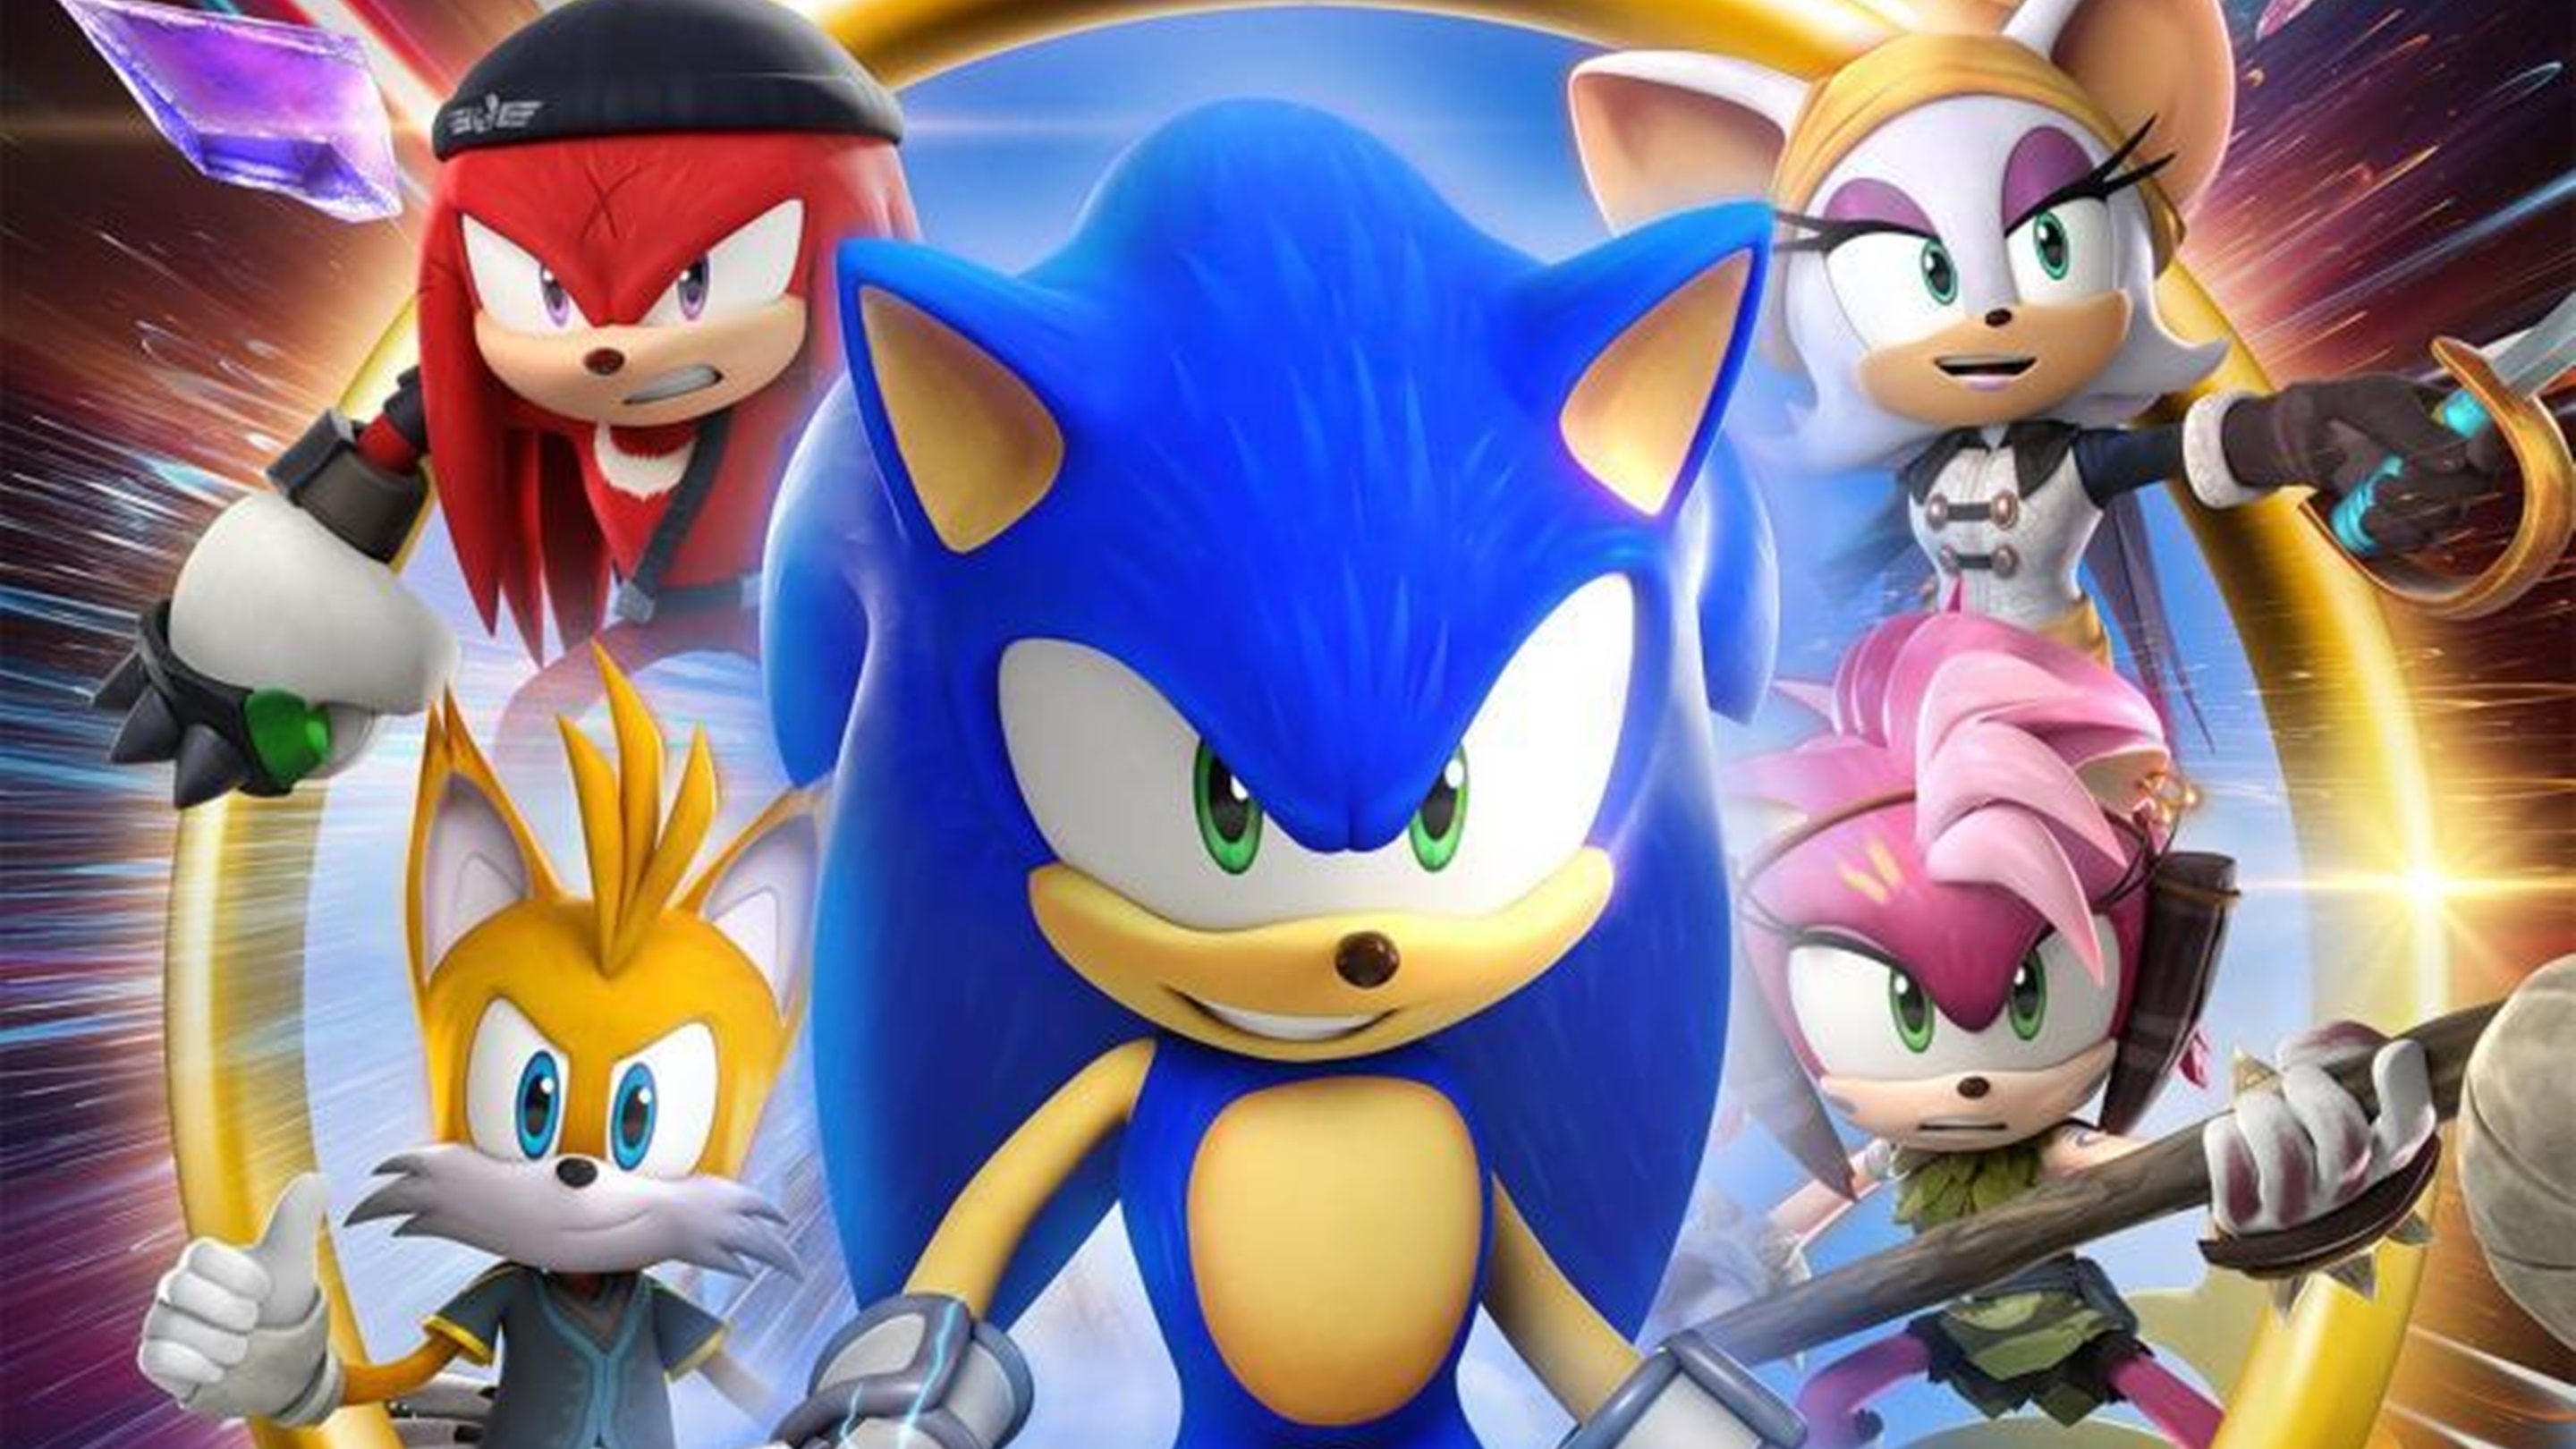 Sonic Prime confirma fecha para nuevos episodios en Netflix - La Razón